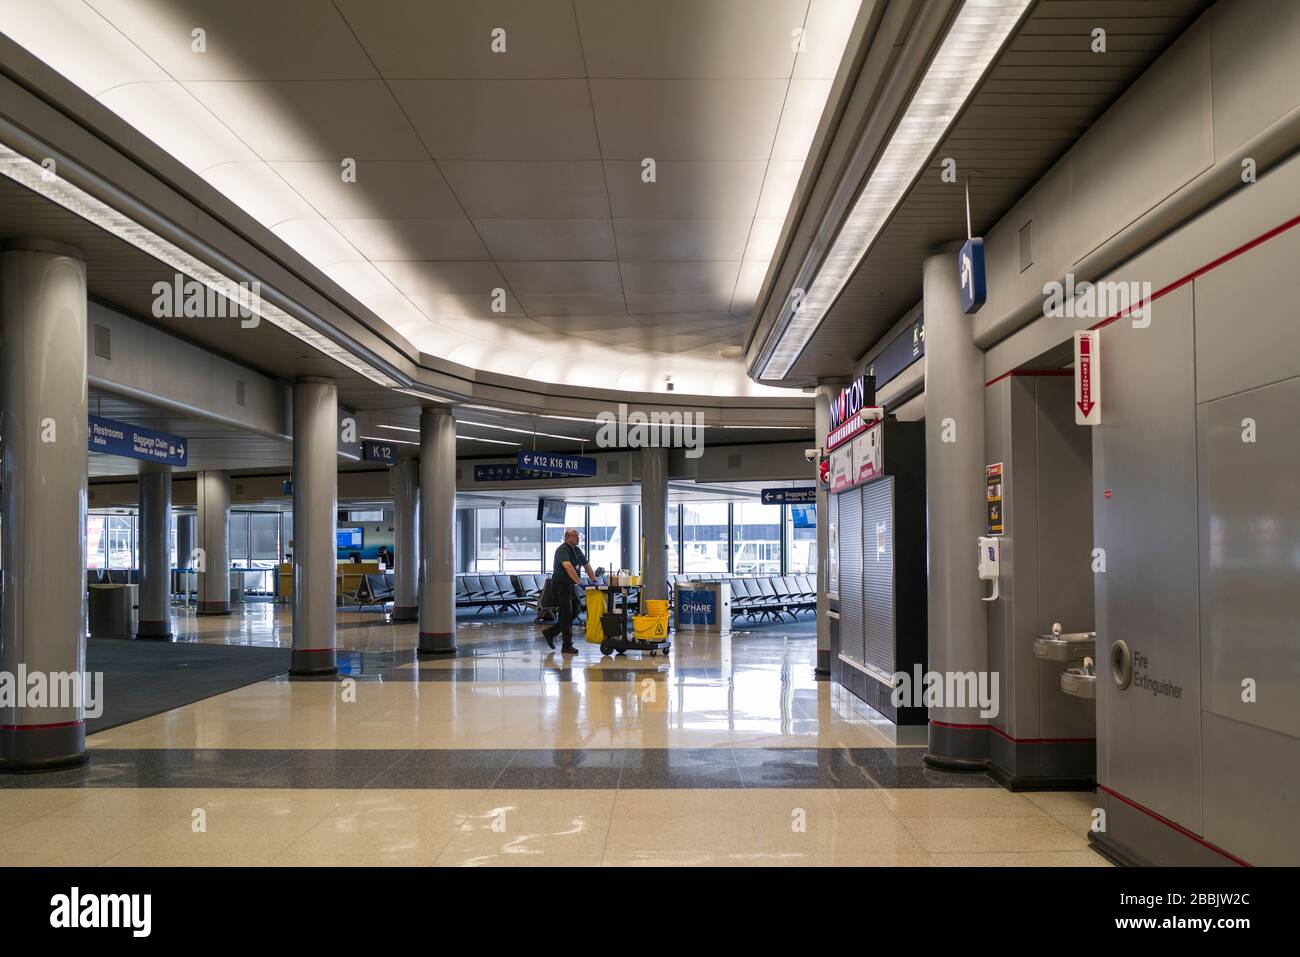 L'aéroport international O'Hare de Chicago, autrefois l'un des aéroports les plus fréquentés des États-Unis, est maintenant complètement vide en raison de la pandémie de Coronavirus COVID-19. Banque D'Images